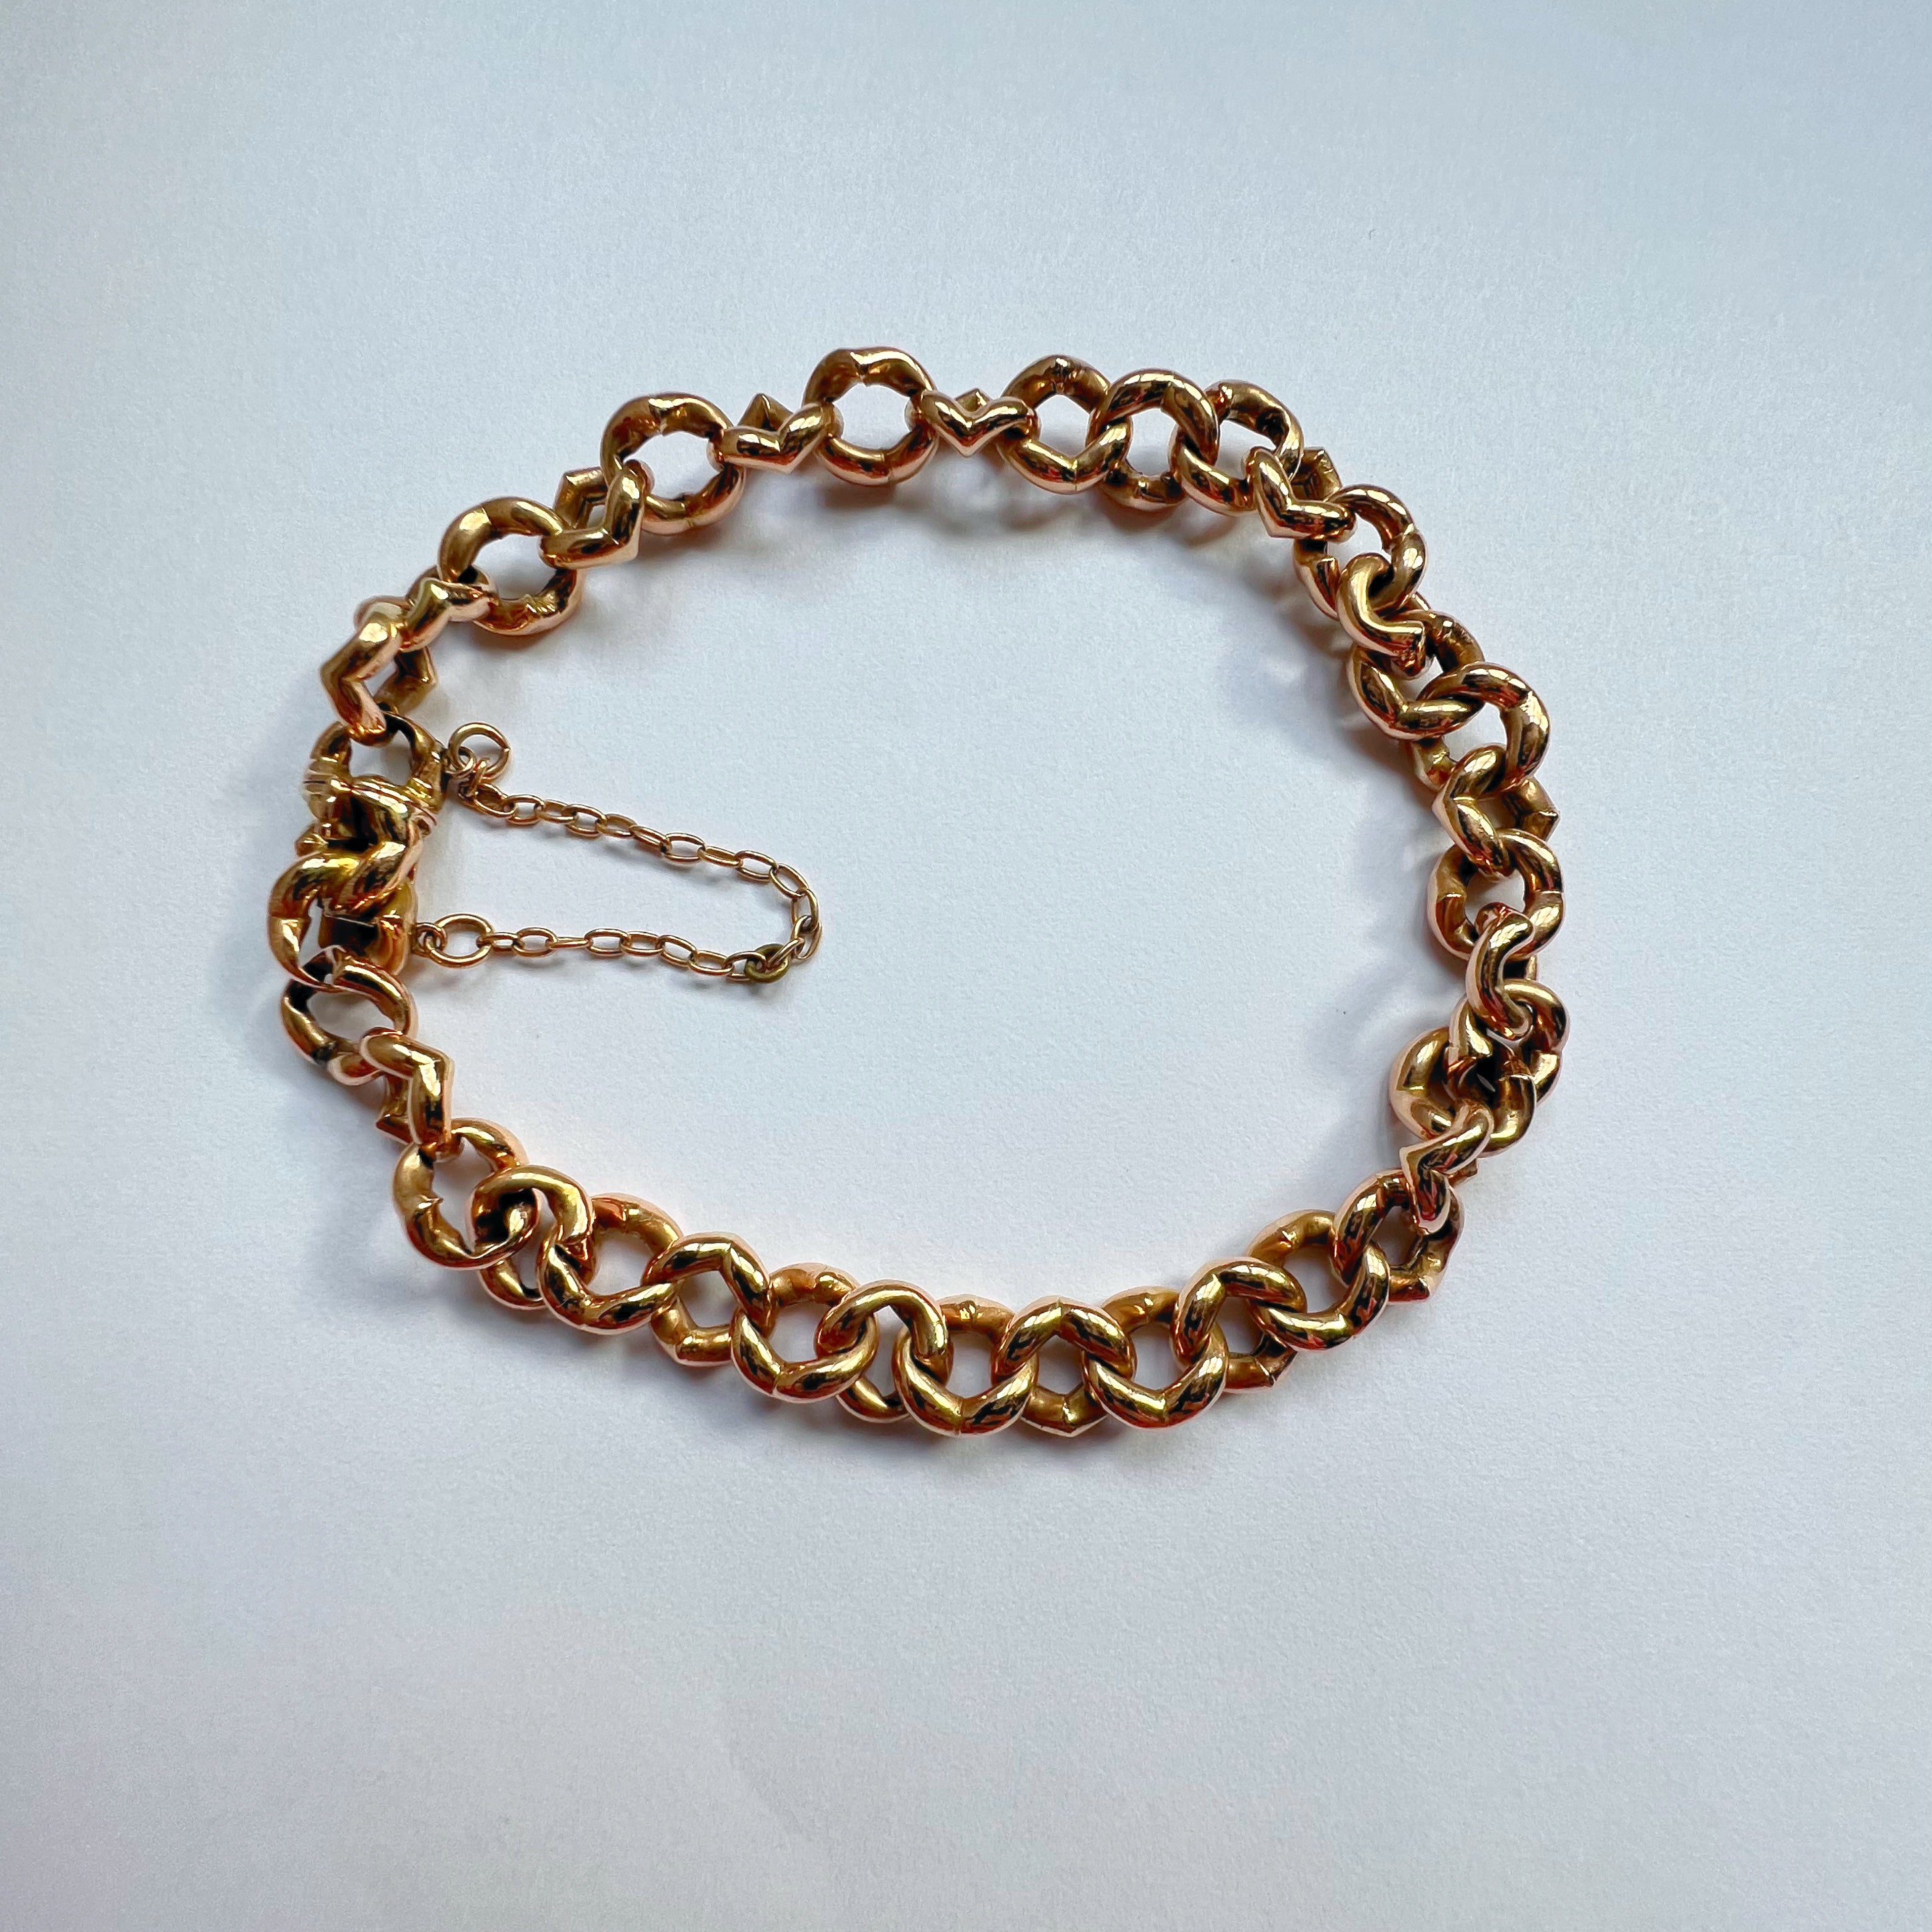 Antique 15ct Gold Heart Link Bracelet